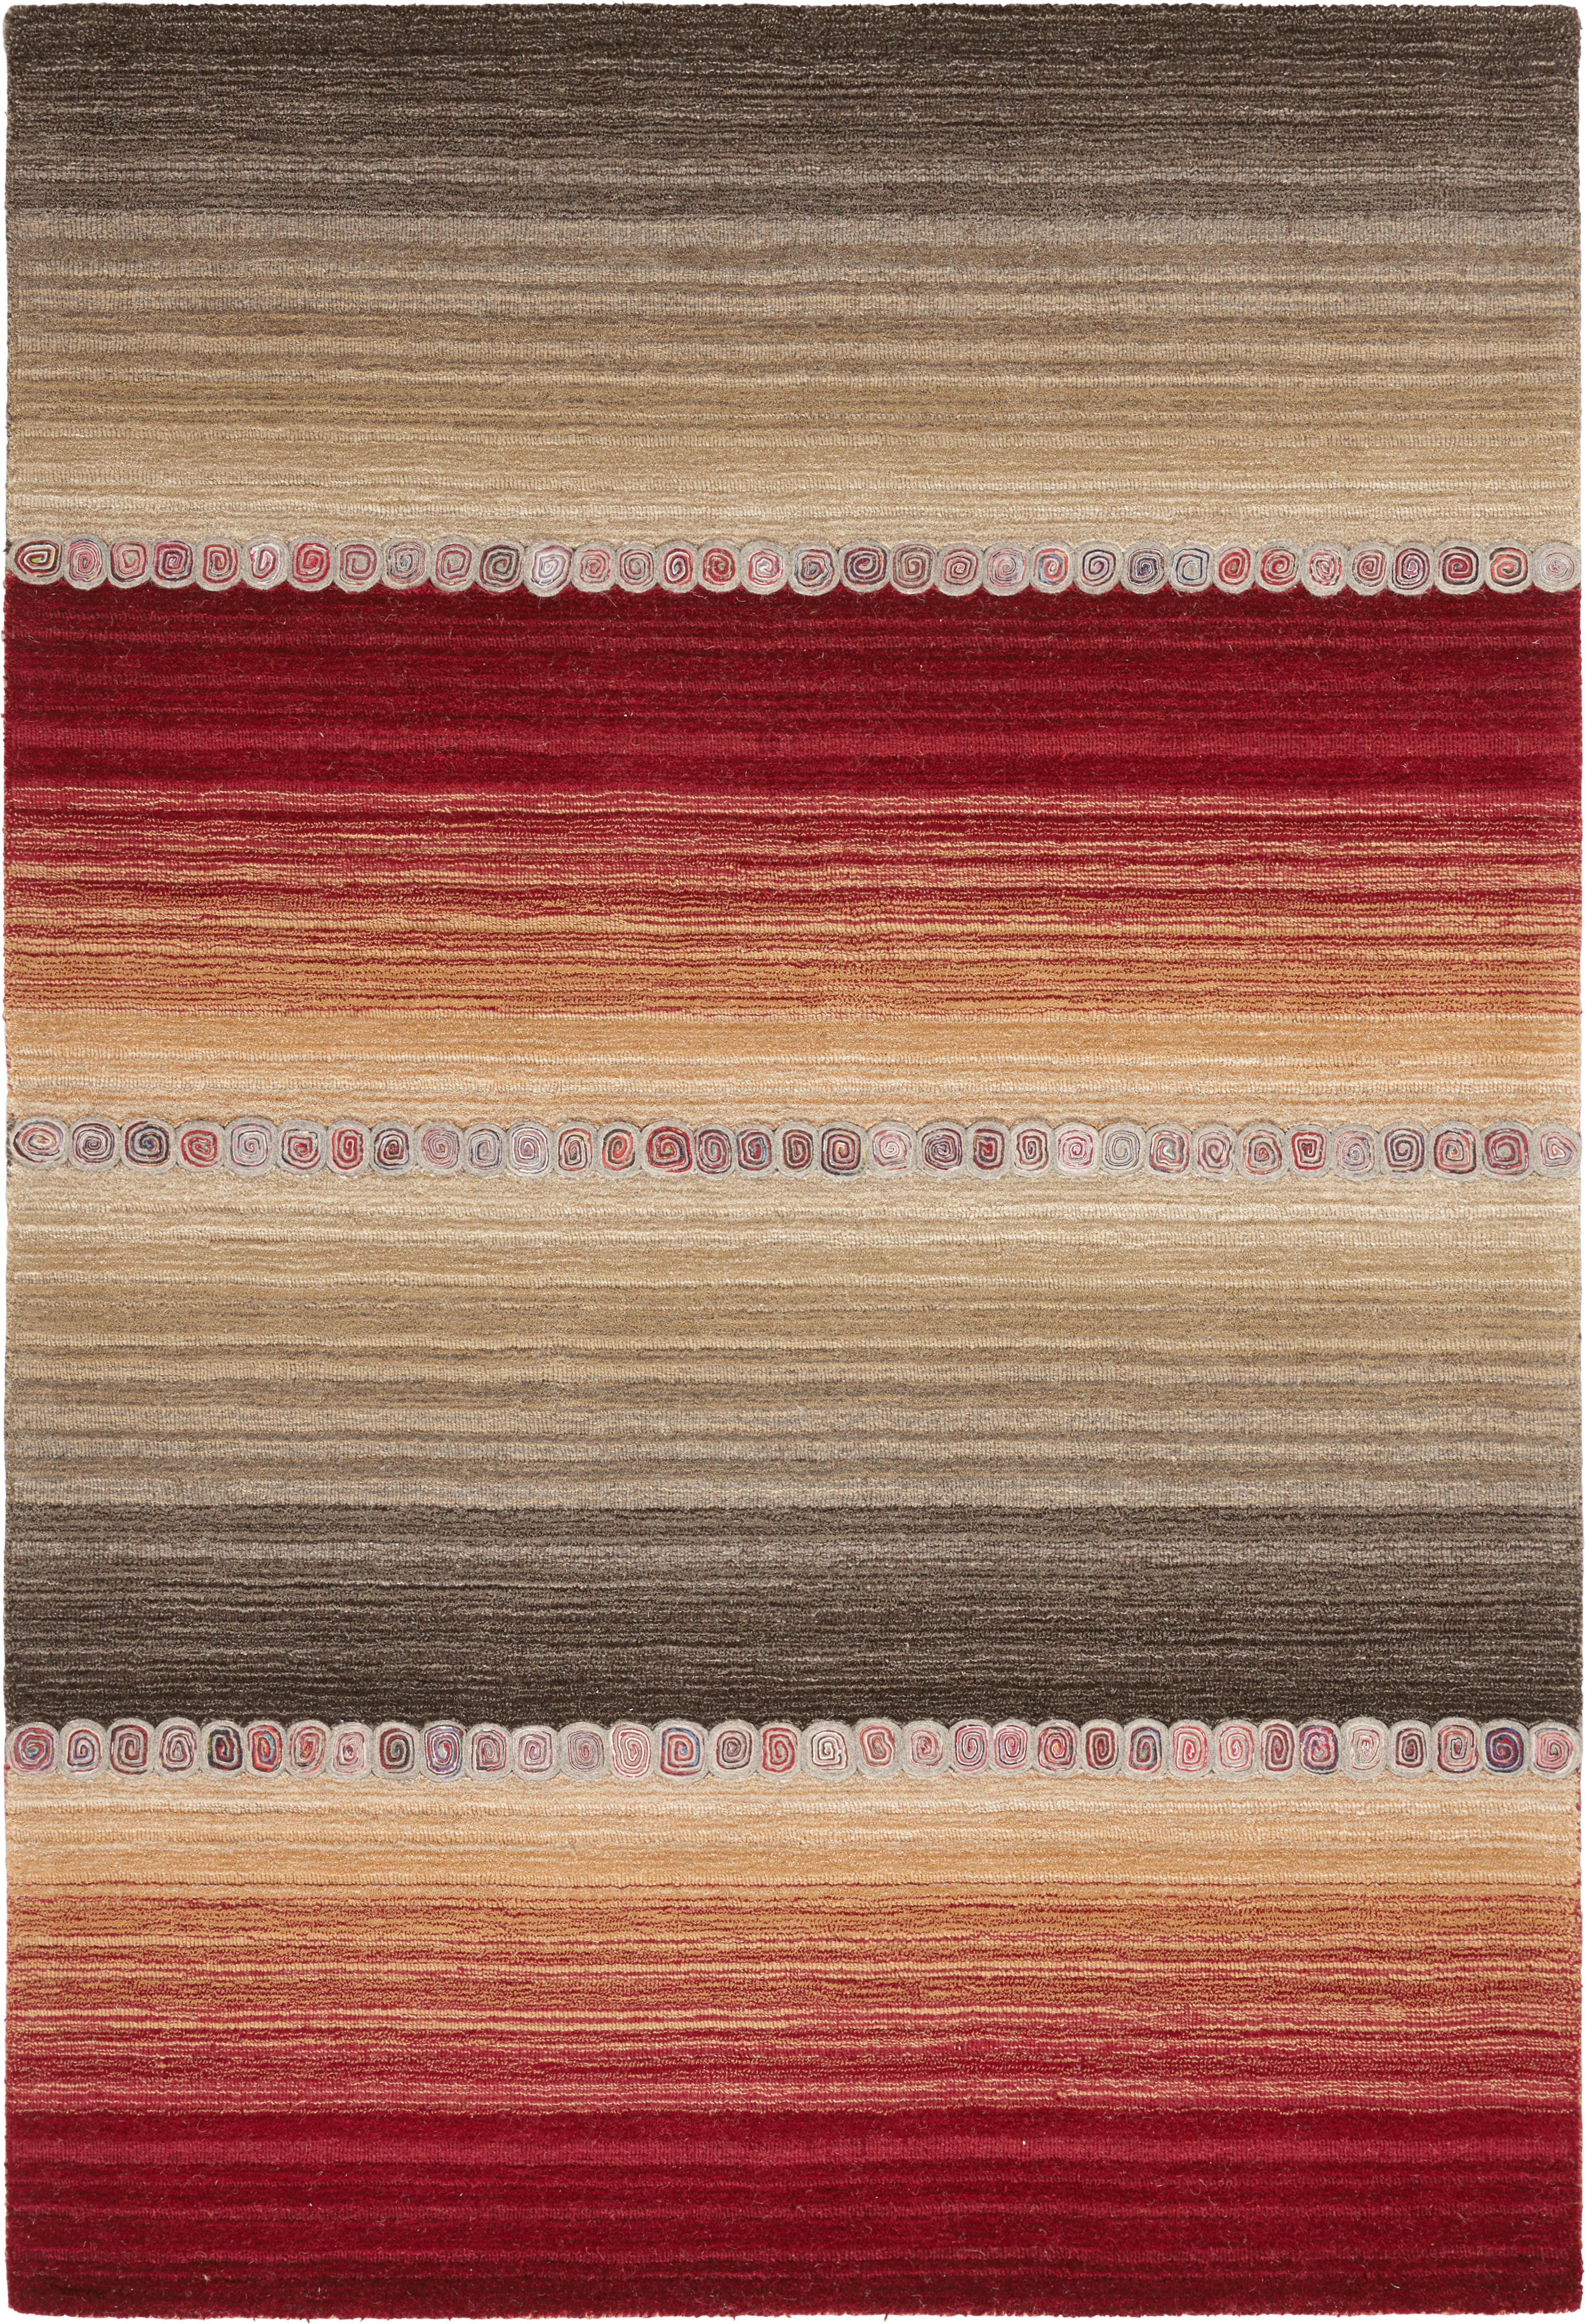 COVOR ORIENTAL  Twilight in Red  - roșu/gri, Konventionell, textil (160/230cm) - Cazaris